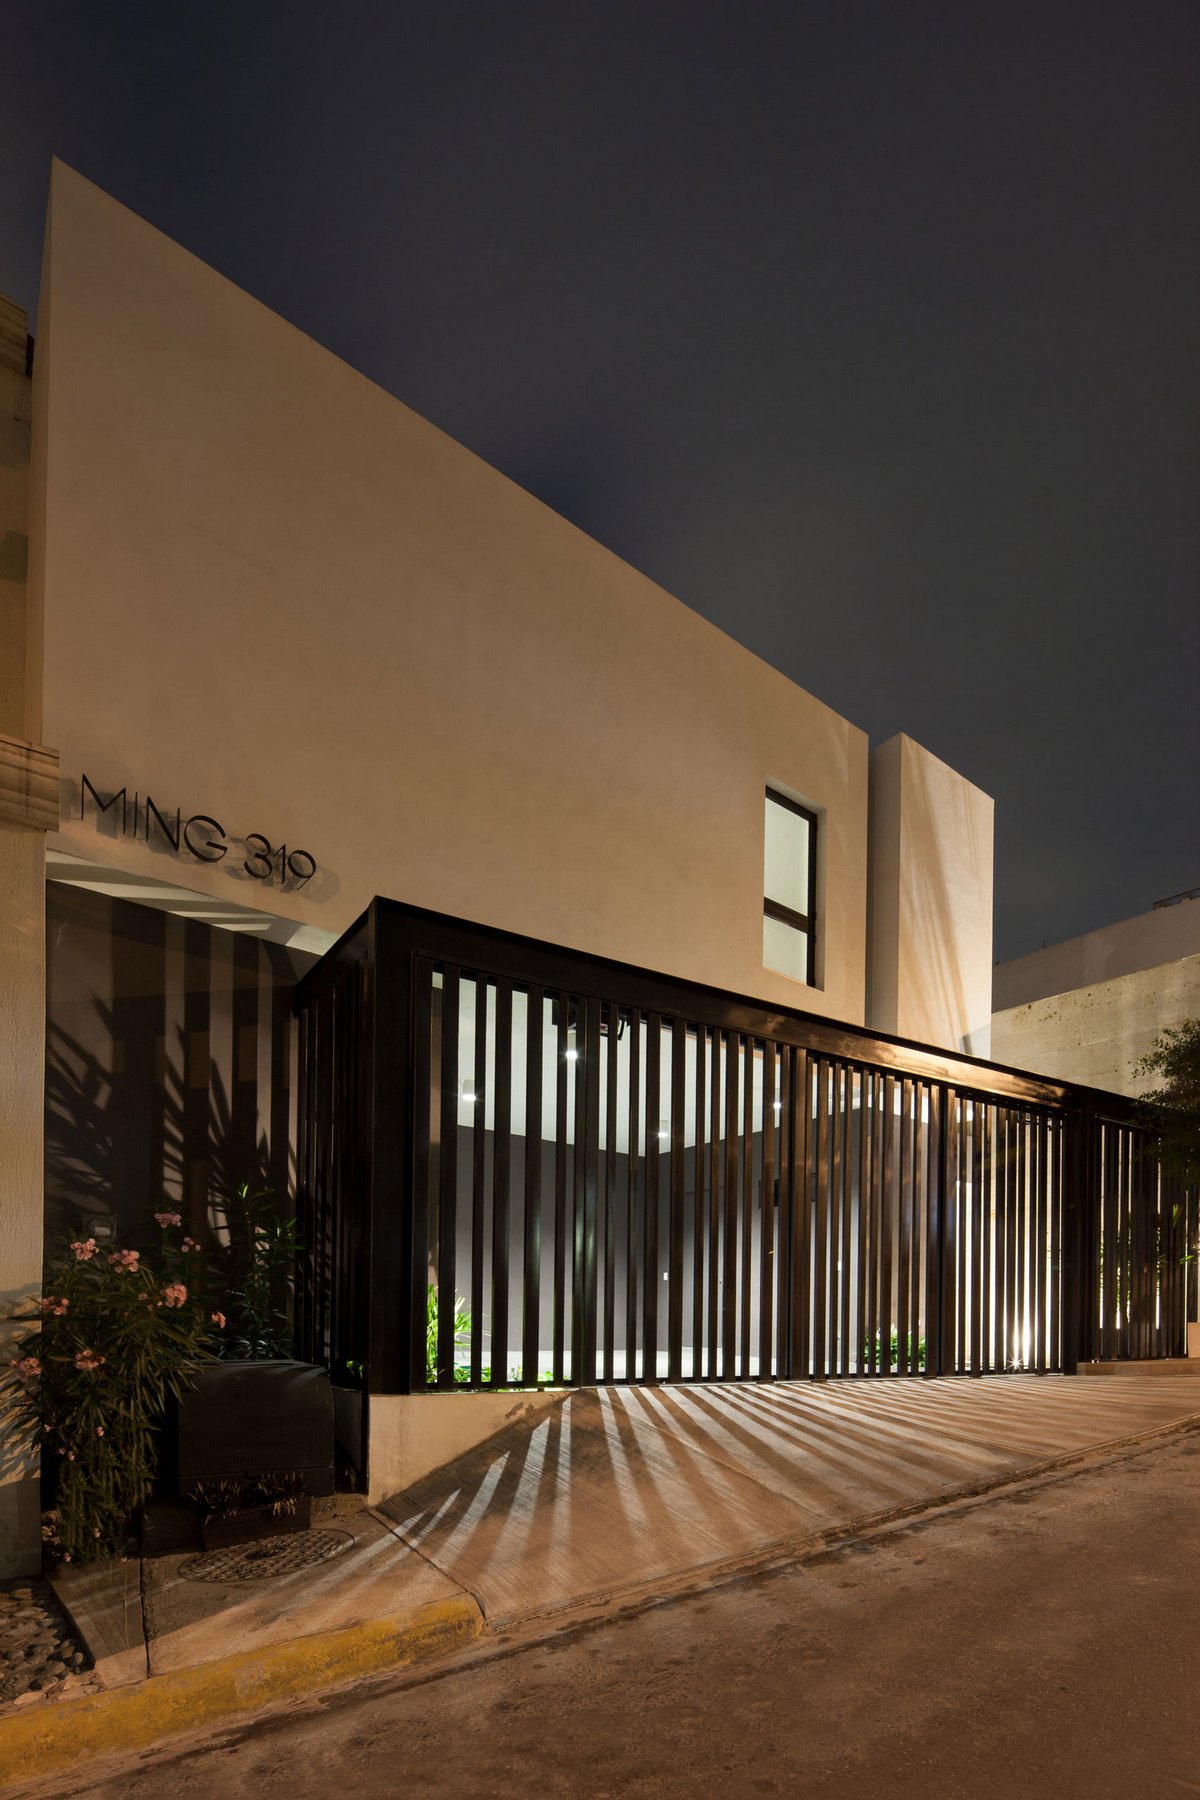 LGZ Taller de Arquitectura, частный дом в Мексике, дома в Монтеррей, частный дом на маленьком участке земли, план дома, фотографии частных домов